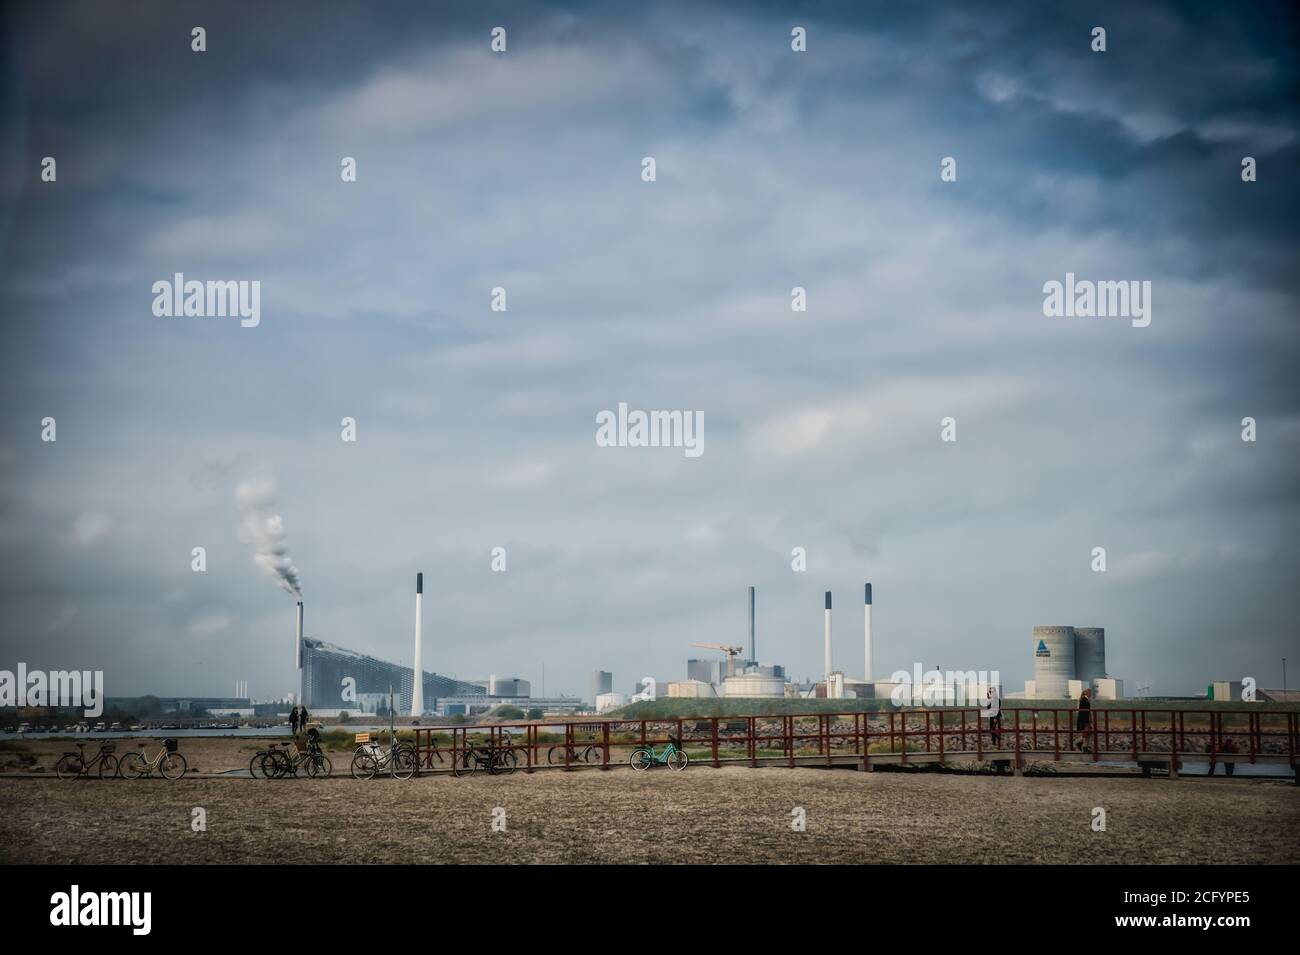 Die Skyline der Stadt mit ihren Fabriken und rauchenden Schornsteinen wirft Besorgnis über Luftverschmutzung, CO2-Emissionen und Treibhausgasemissionen auf. Kopenhagen Stockfoto